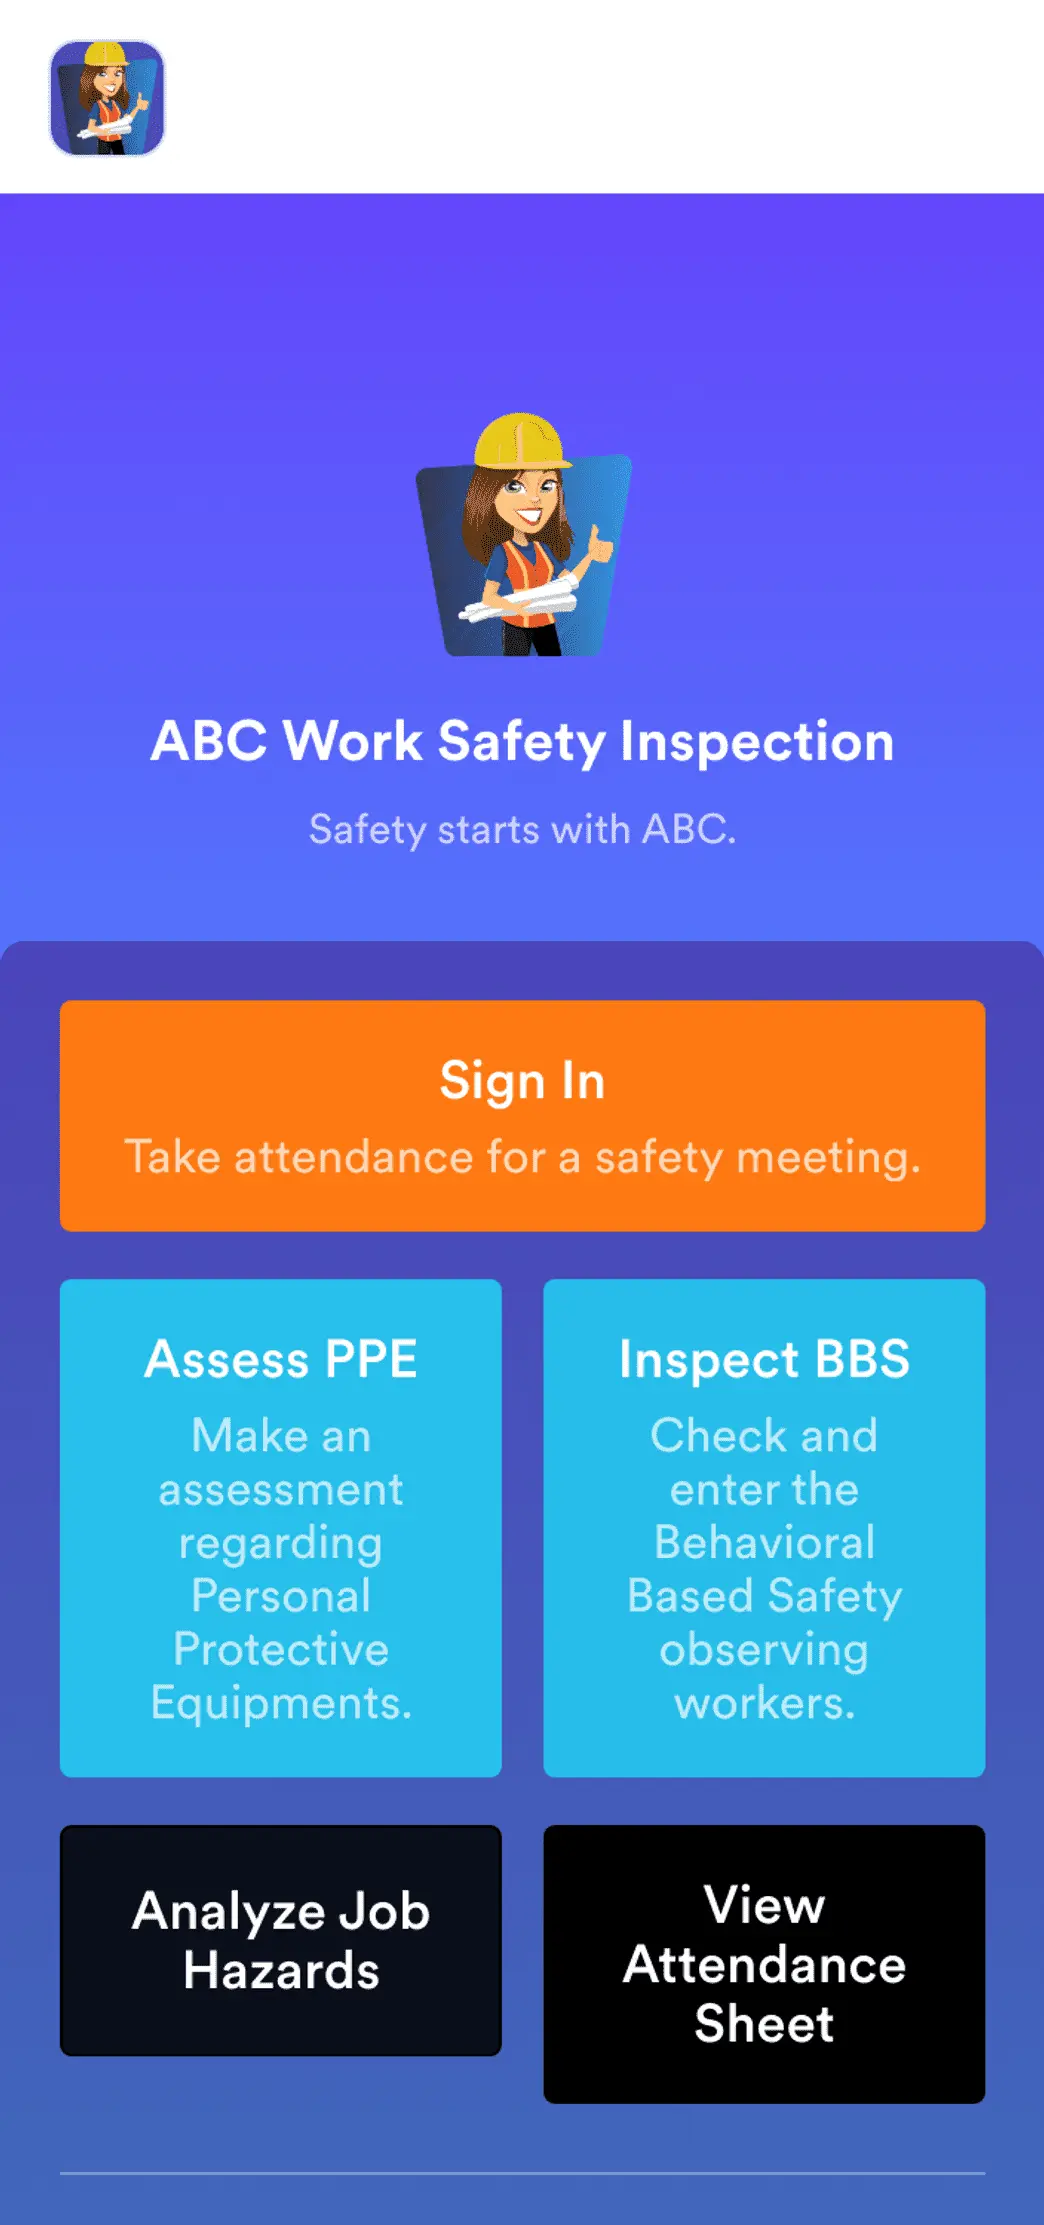 Work Zone Safety App